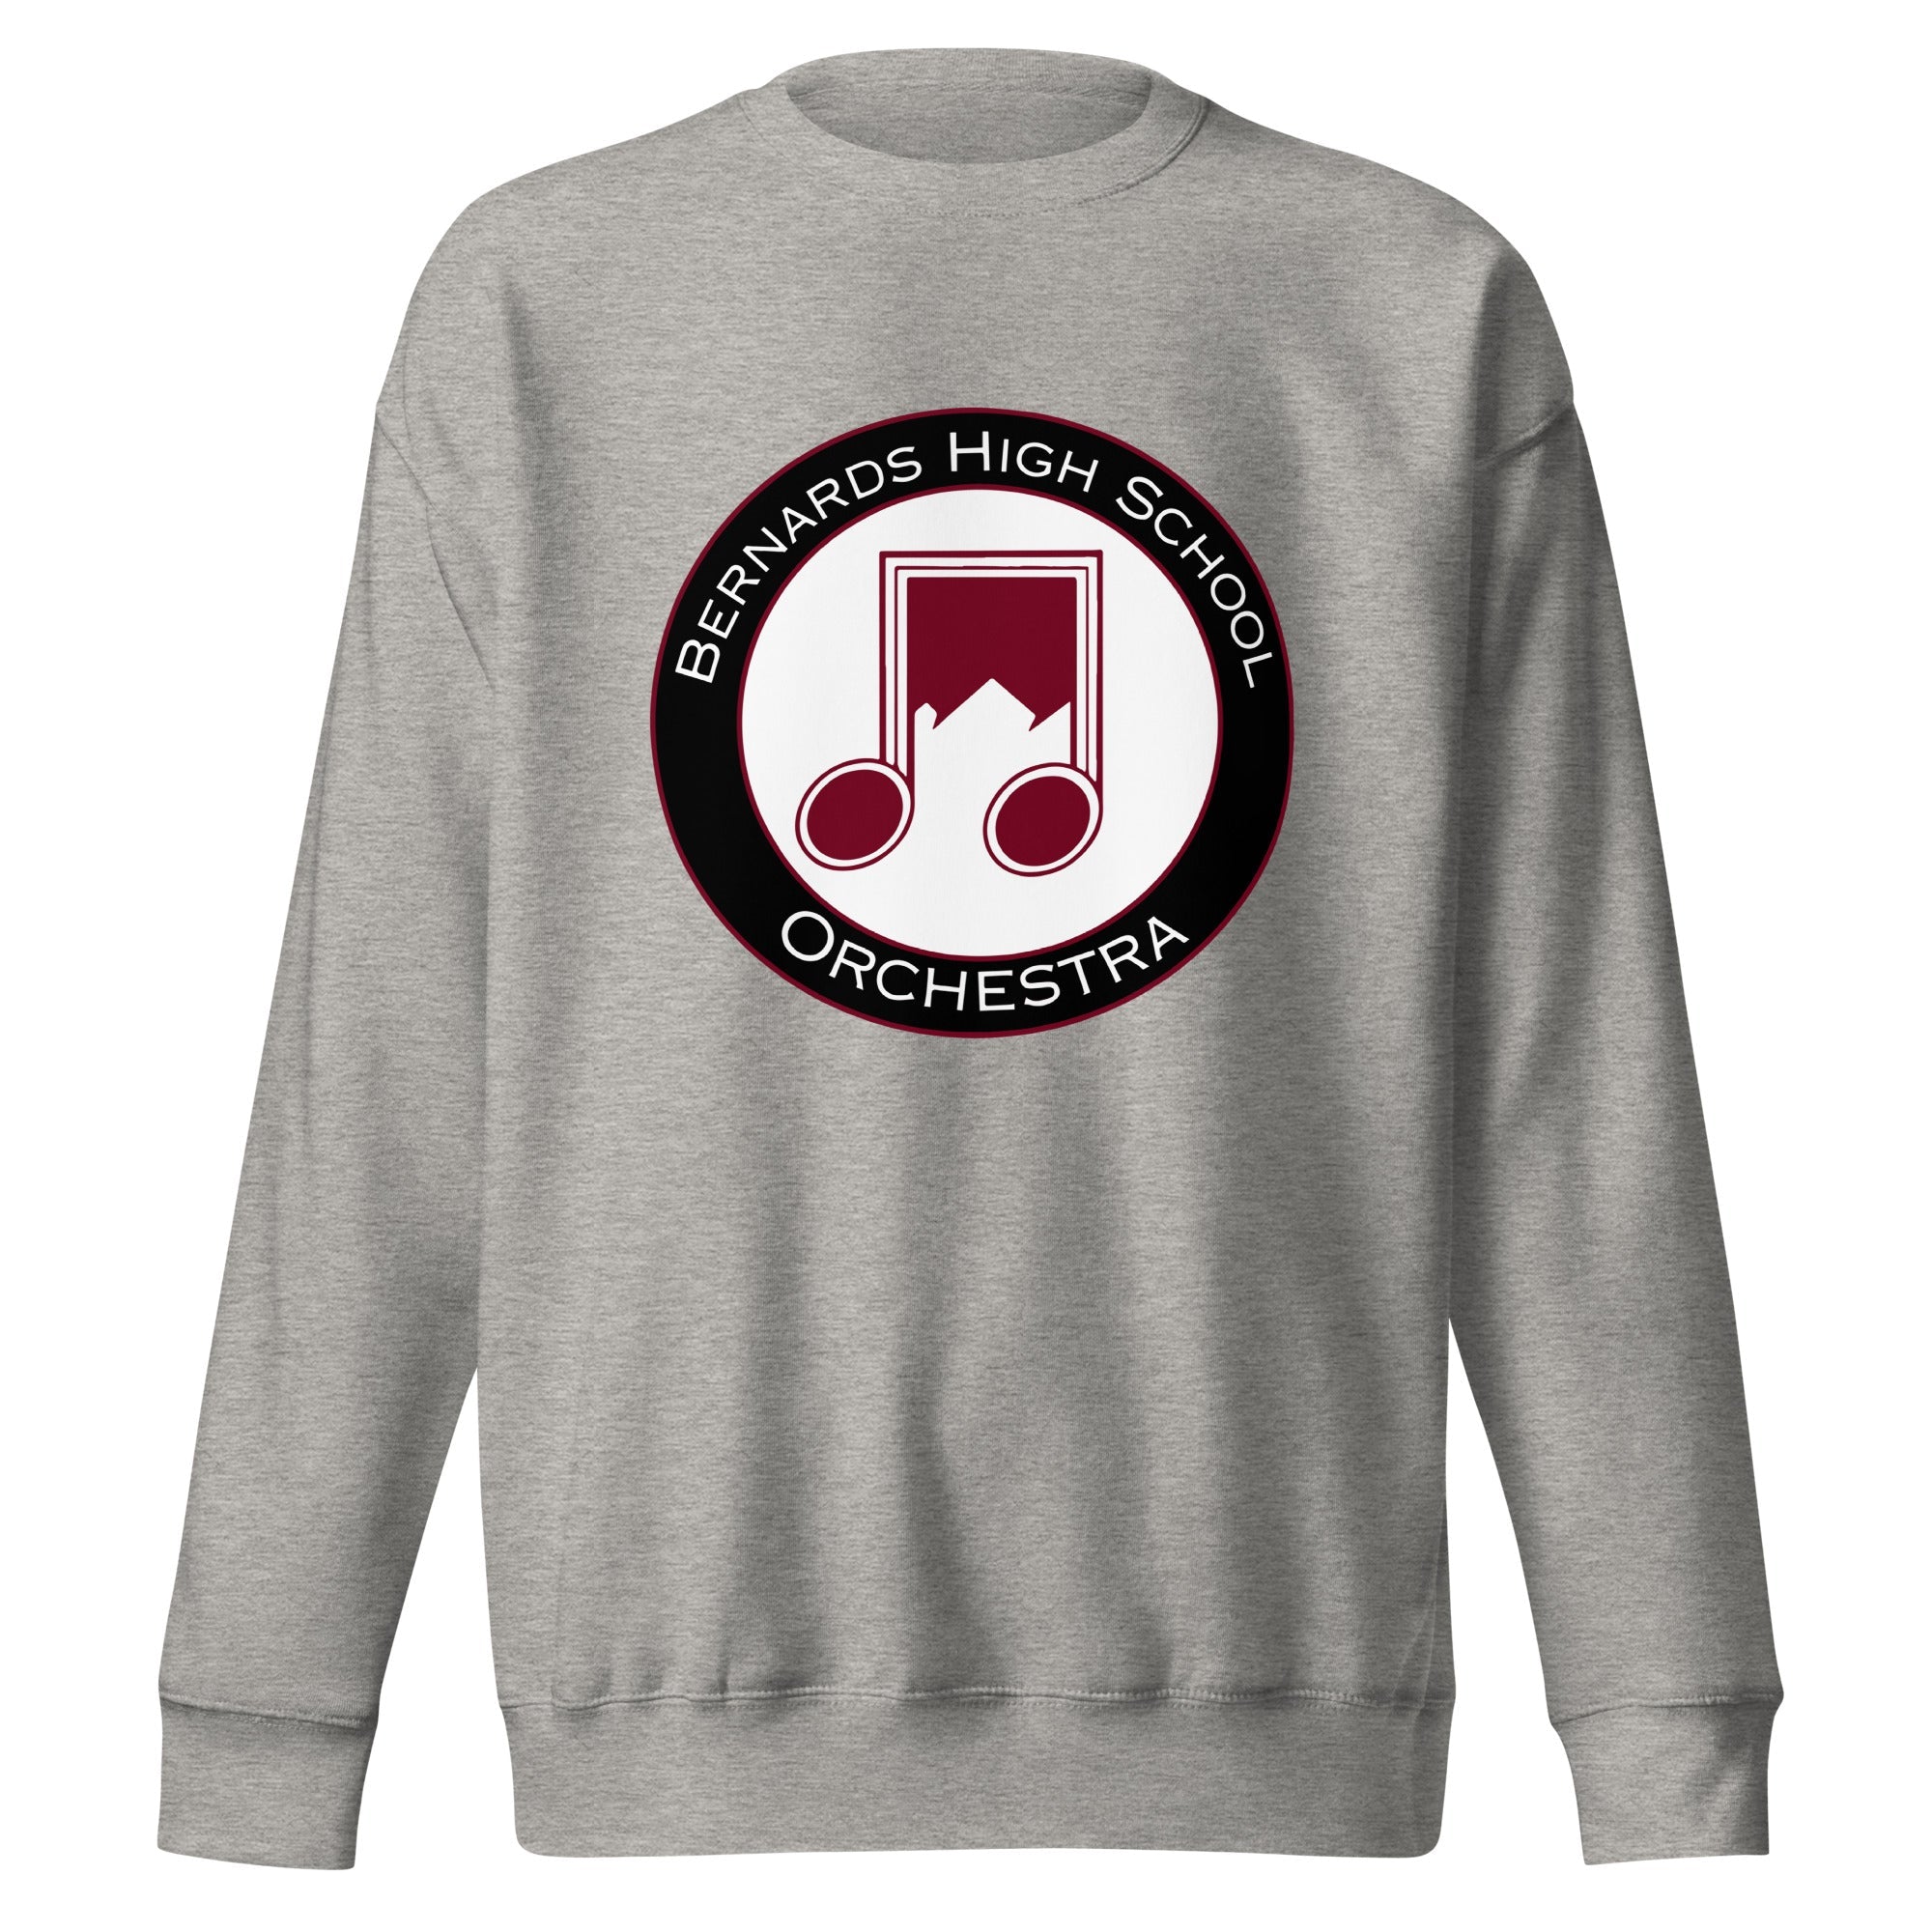 BHS Band Orchestra Unisex Premium Sweatshirt